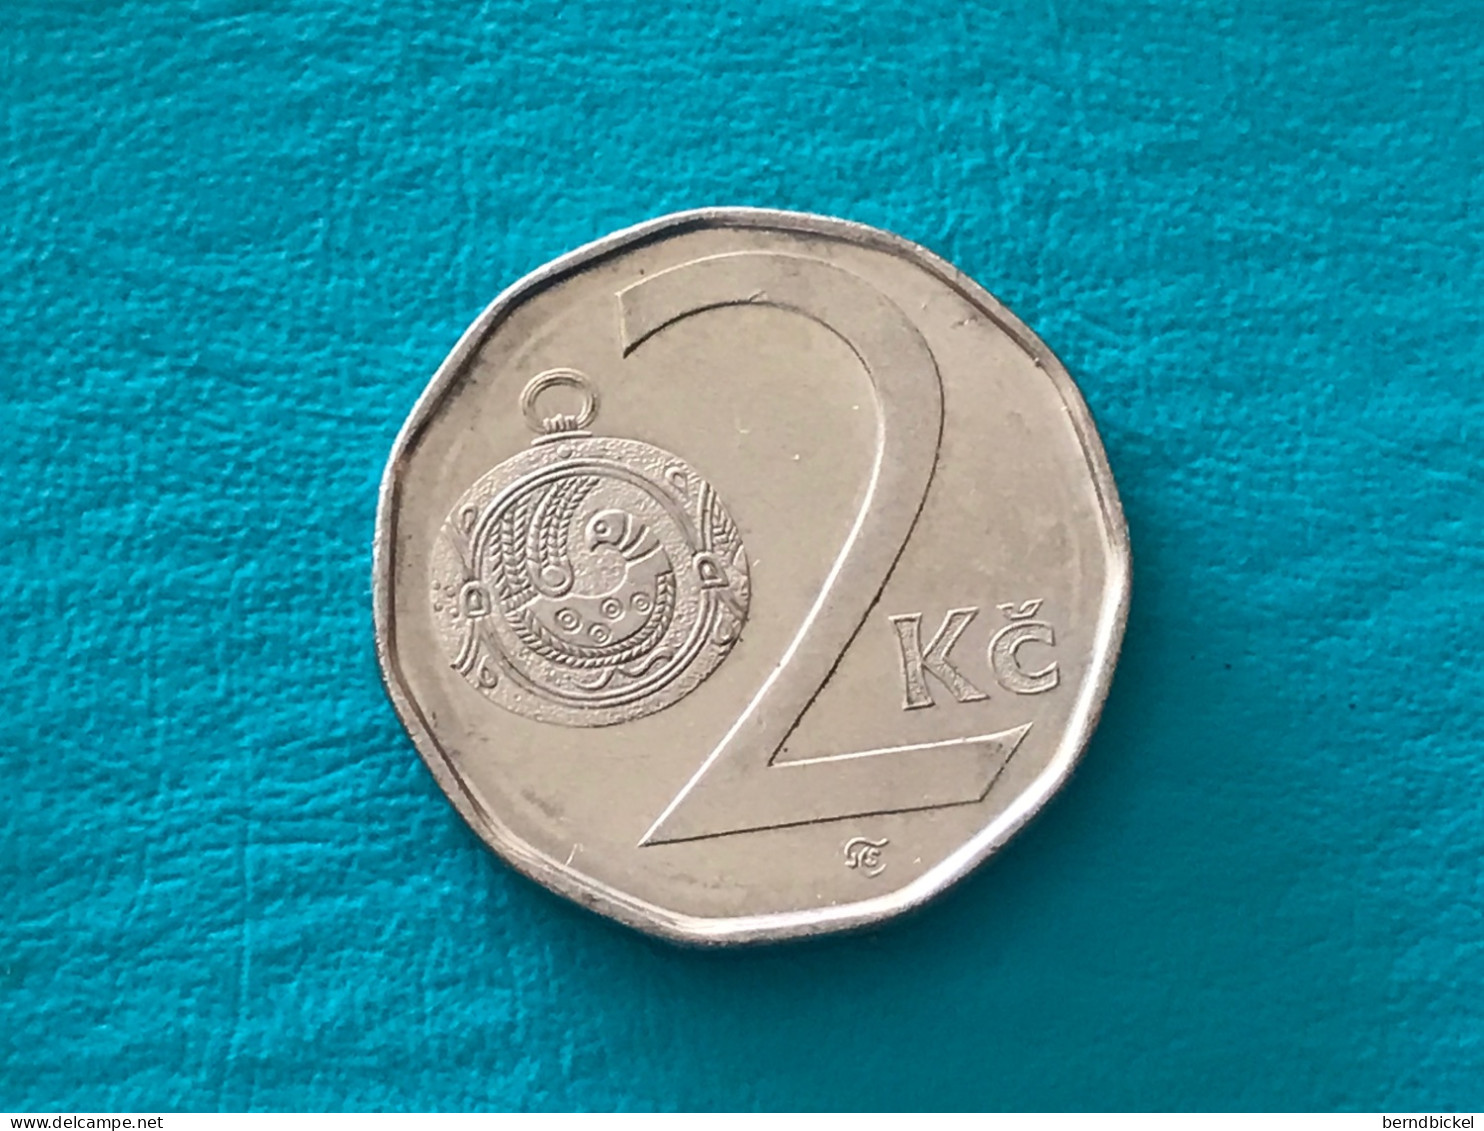 Münze Münzen Umlaufmünze Tschechien 2 Koruna 2001 - Tchéquie